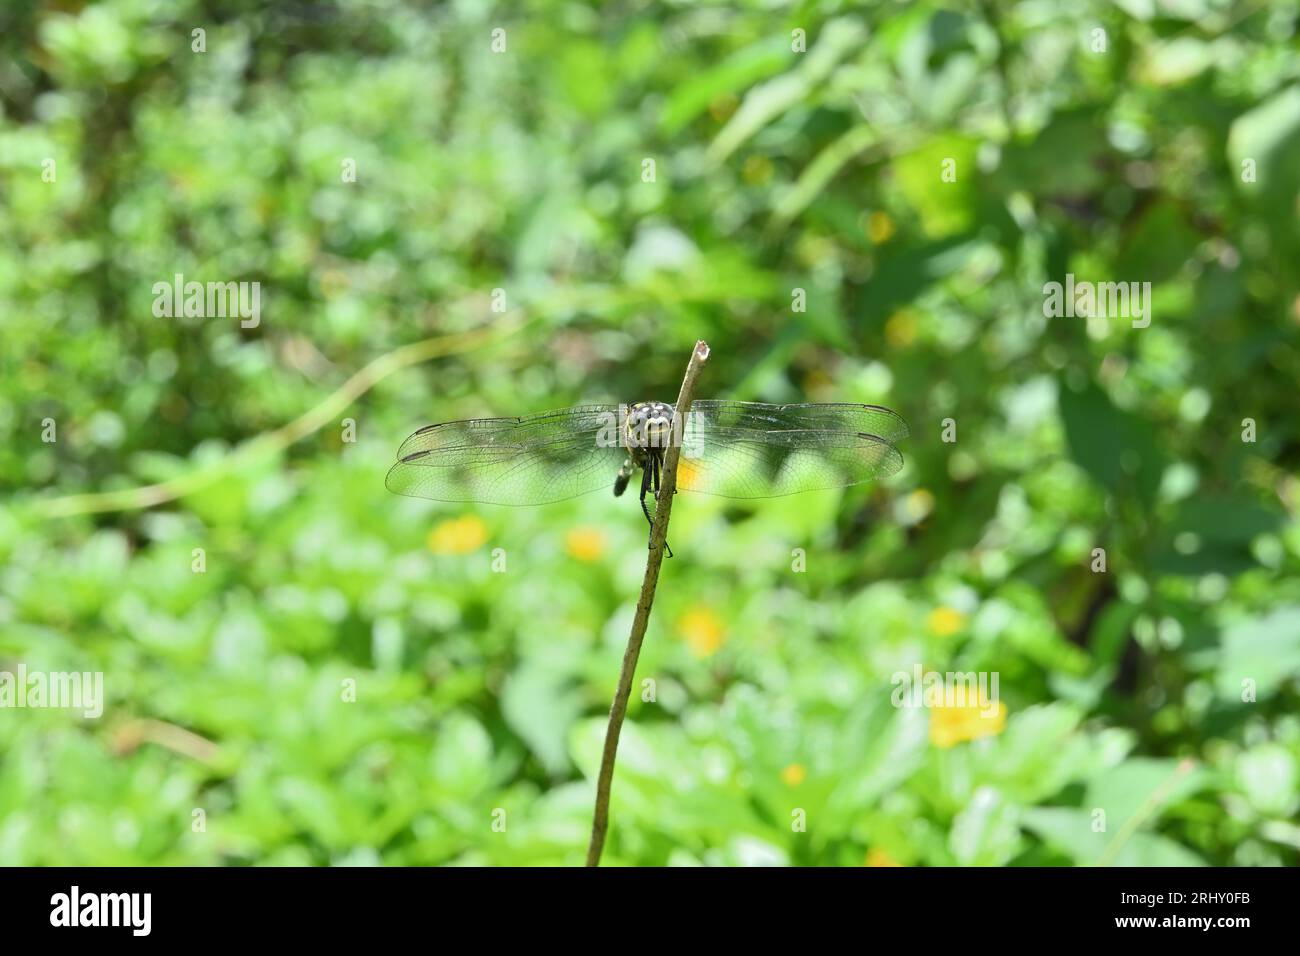 Vorderansicht einer Green Marsh Hawk Libelle auf einem erhöhten Stamm in einer Rasenfläche Stockfoto